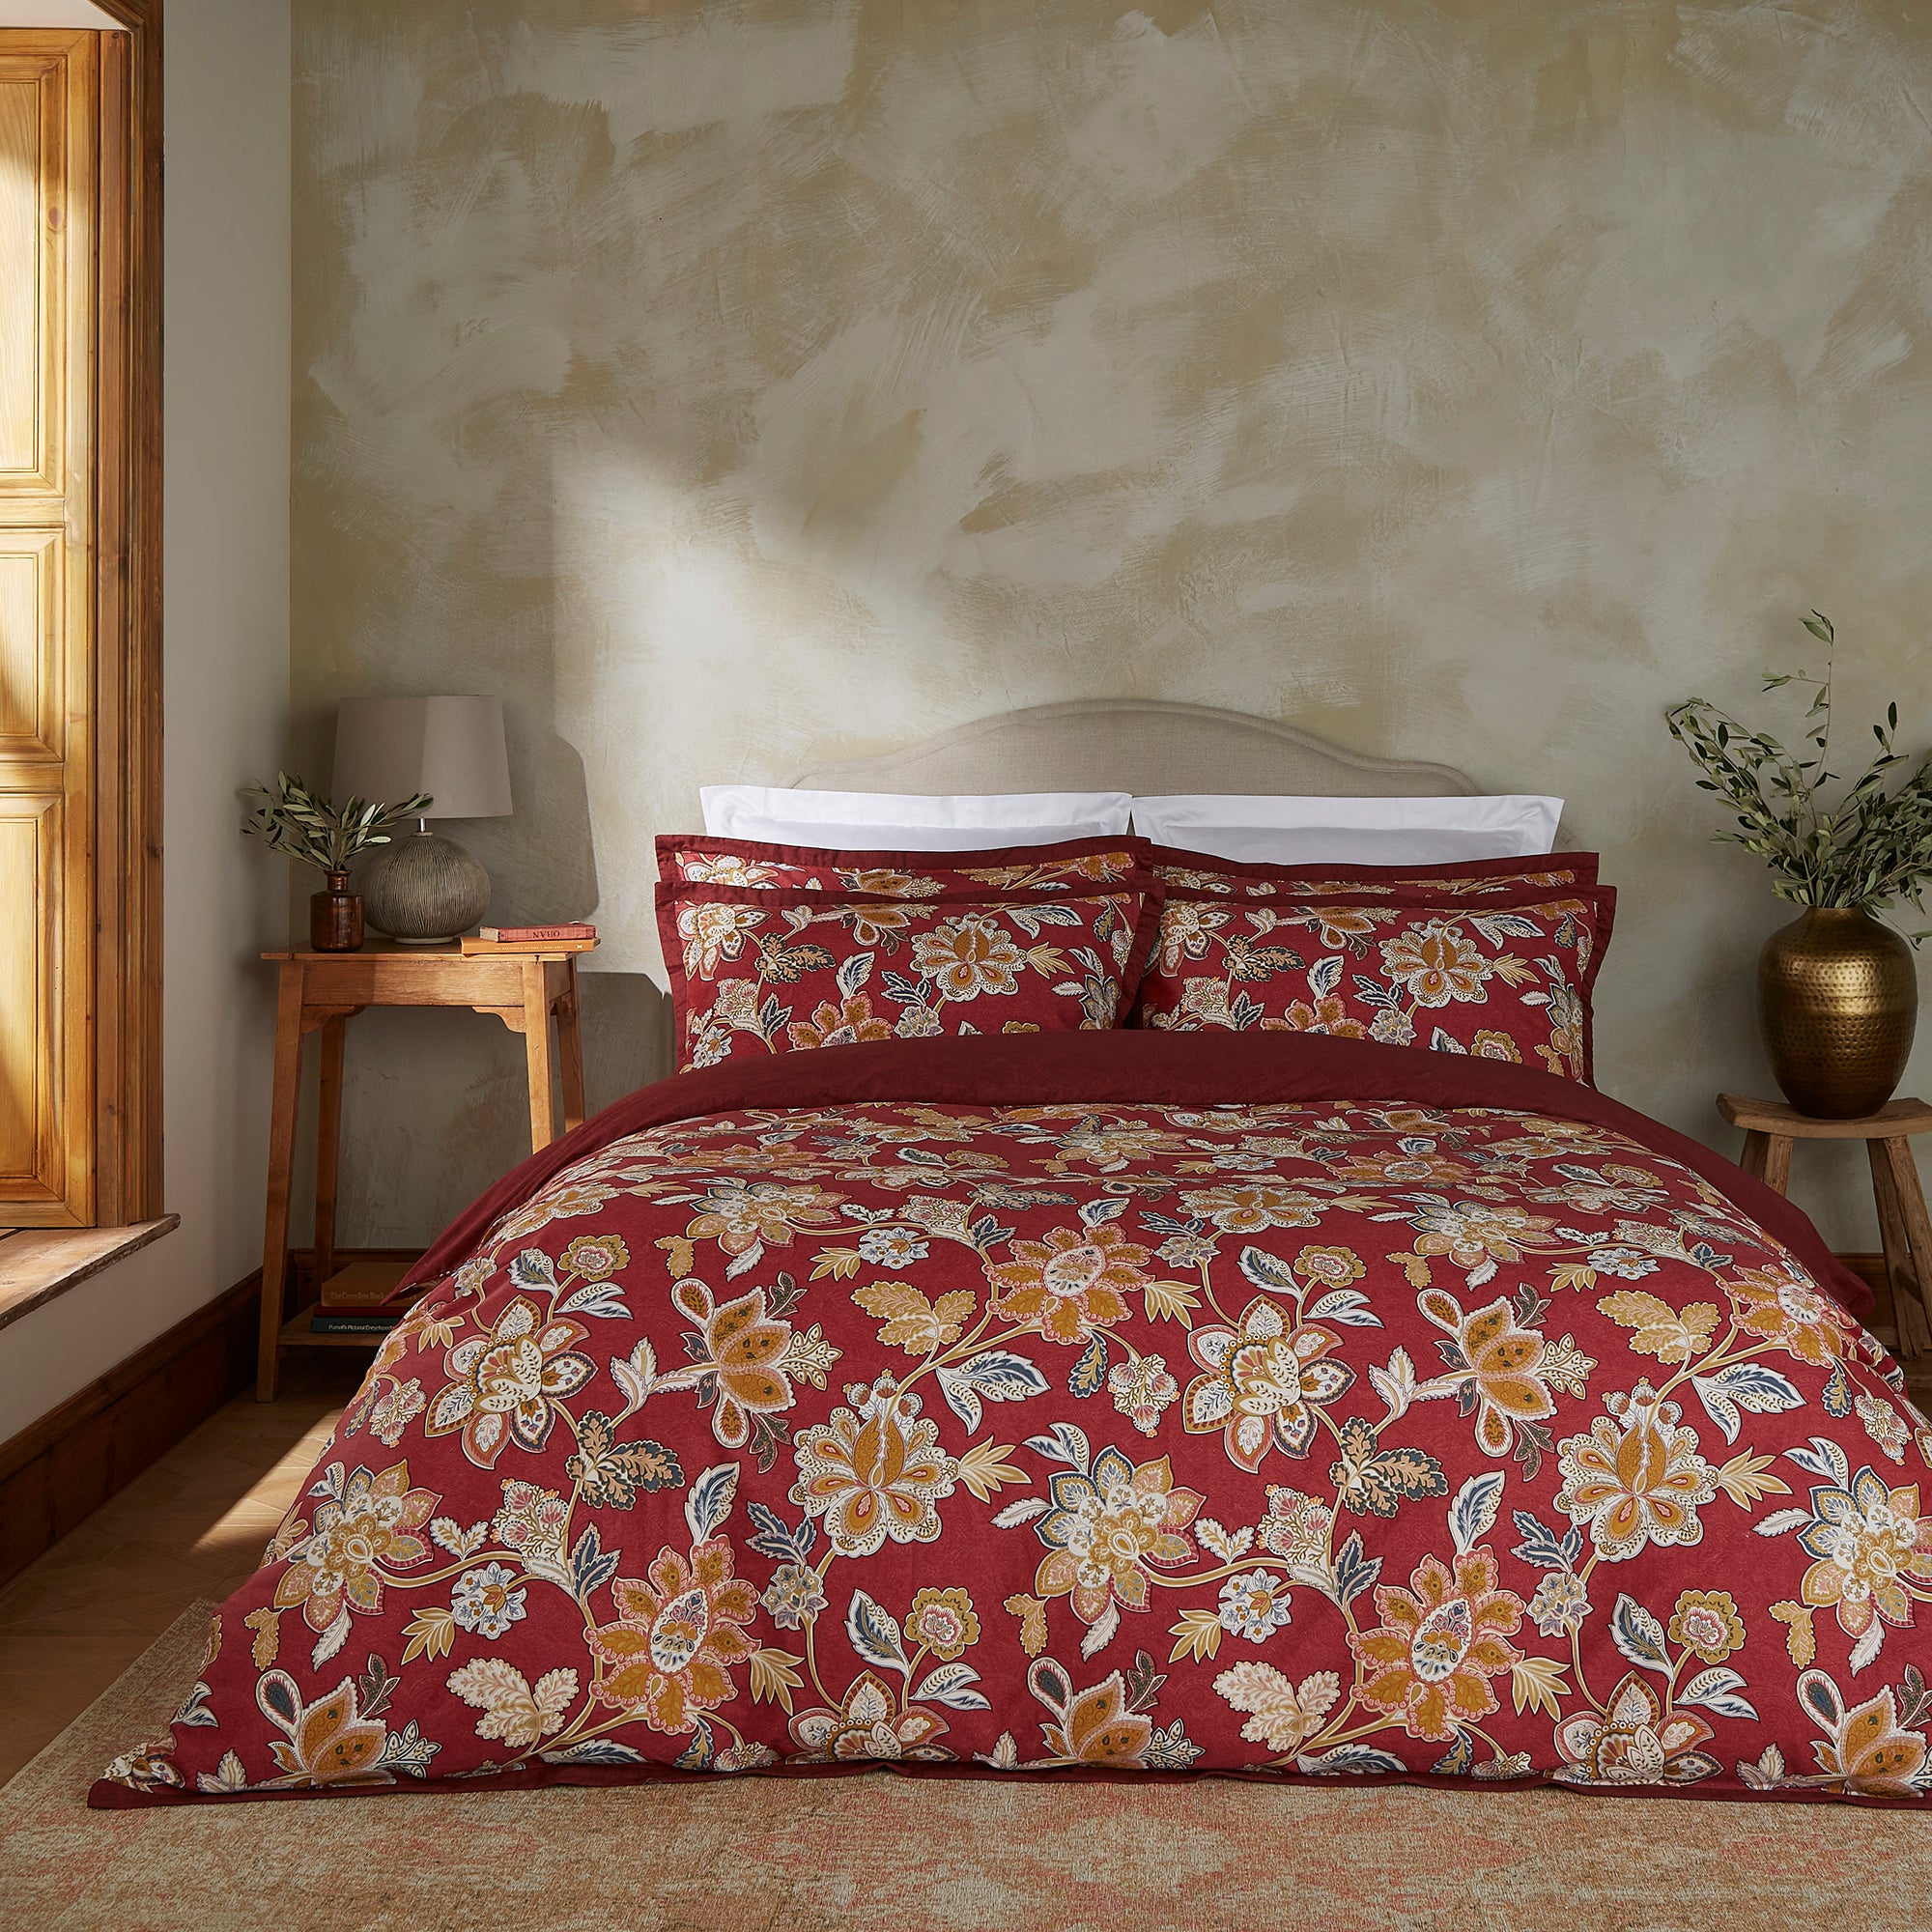 Dorma Samira Saffron Red Cotton Duvet Cover And Pillowcase Set Redorange